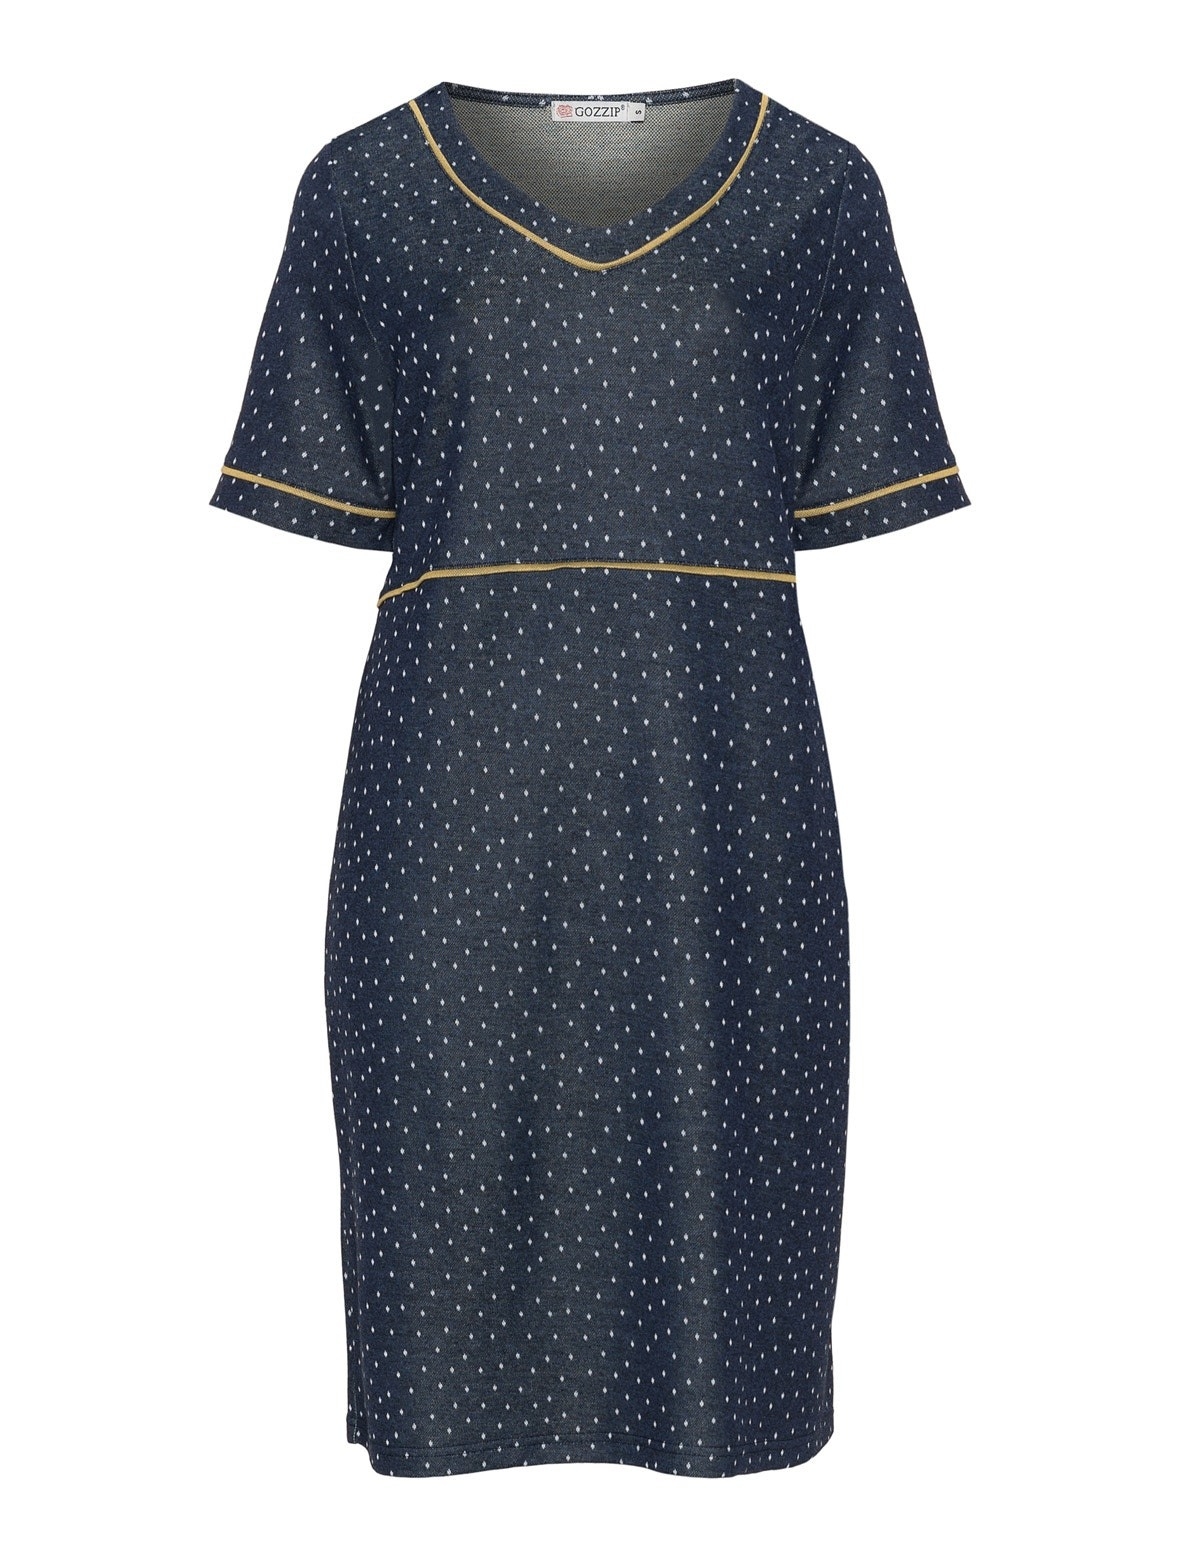 Designer Luxurius Kleid Blau Mit Punkten Ärmel17 Spektakulär Kleid Blau Mit Punkten für 2019